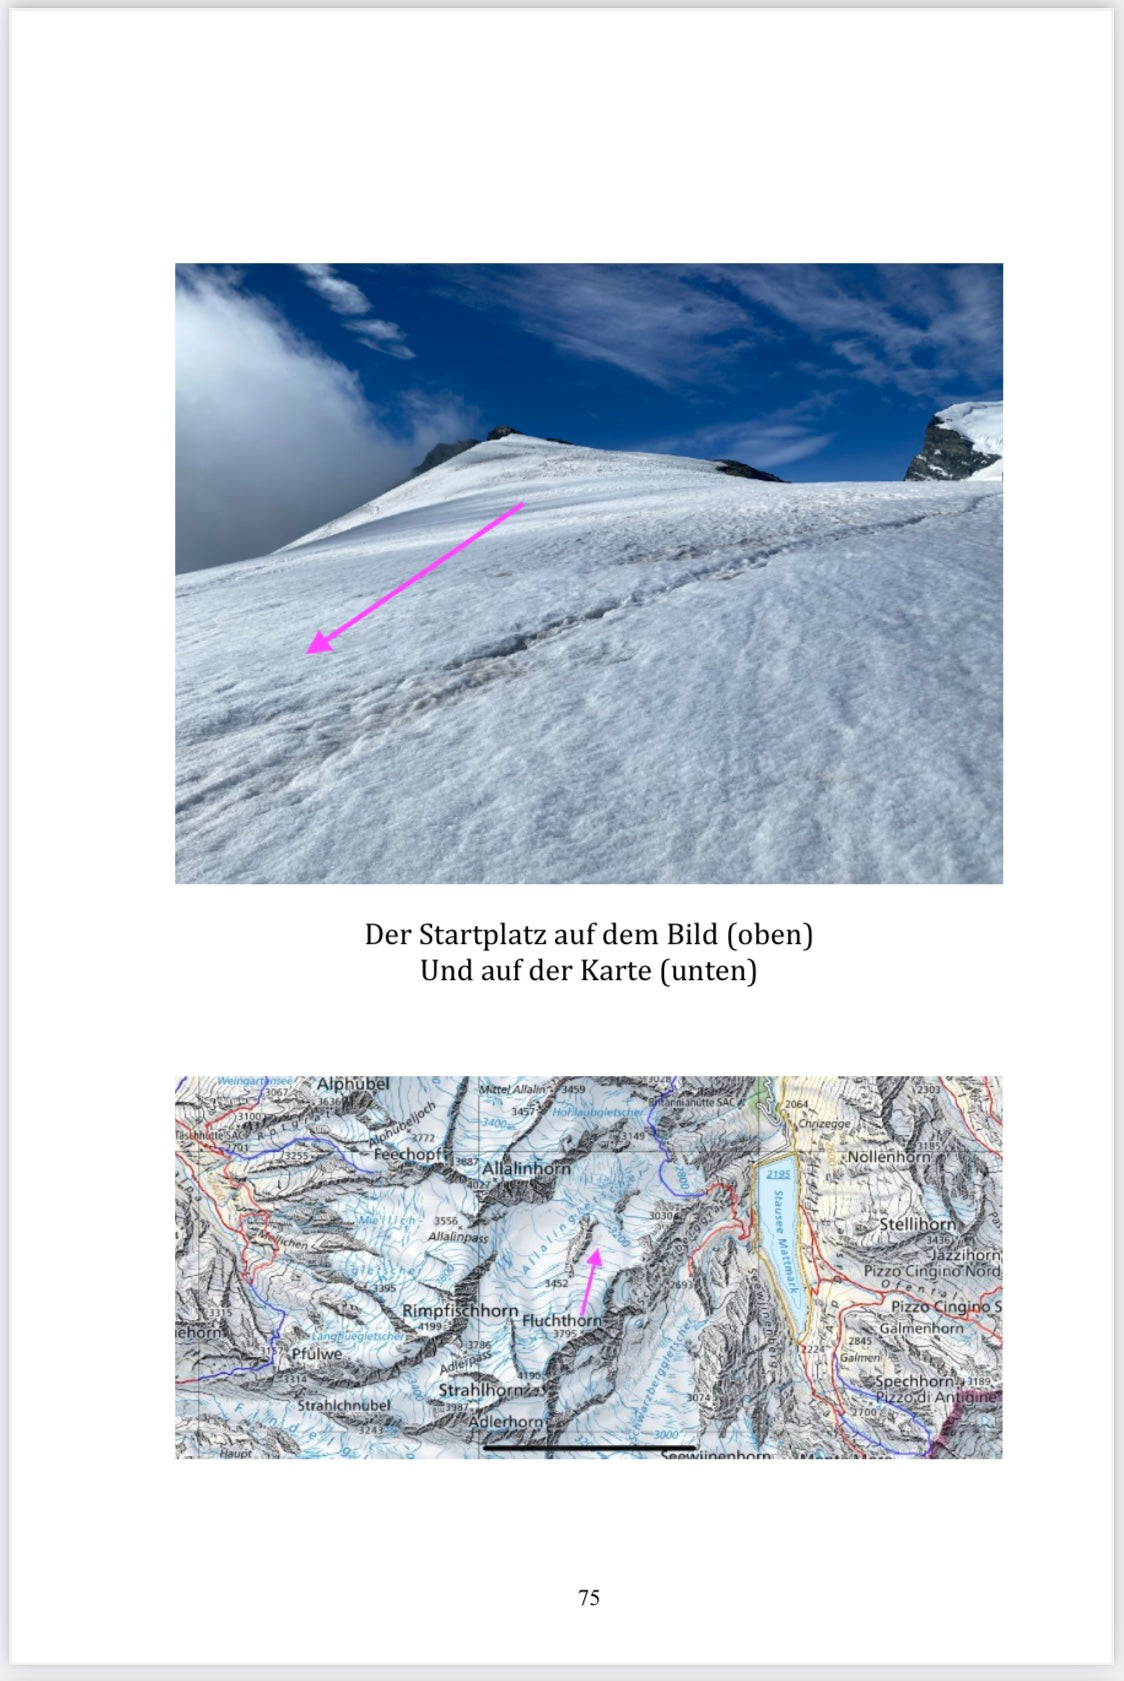 Excursiones alpinas de Hike & Fly